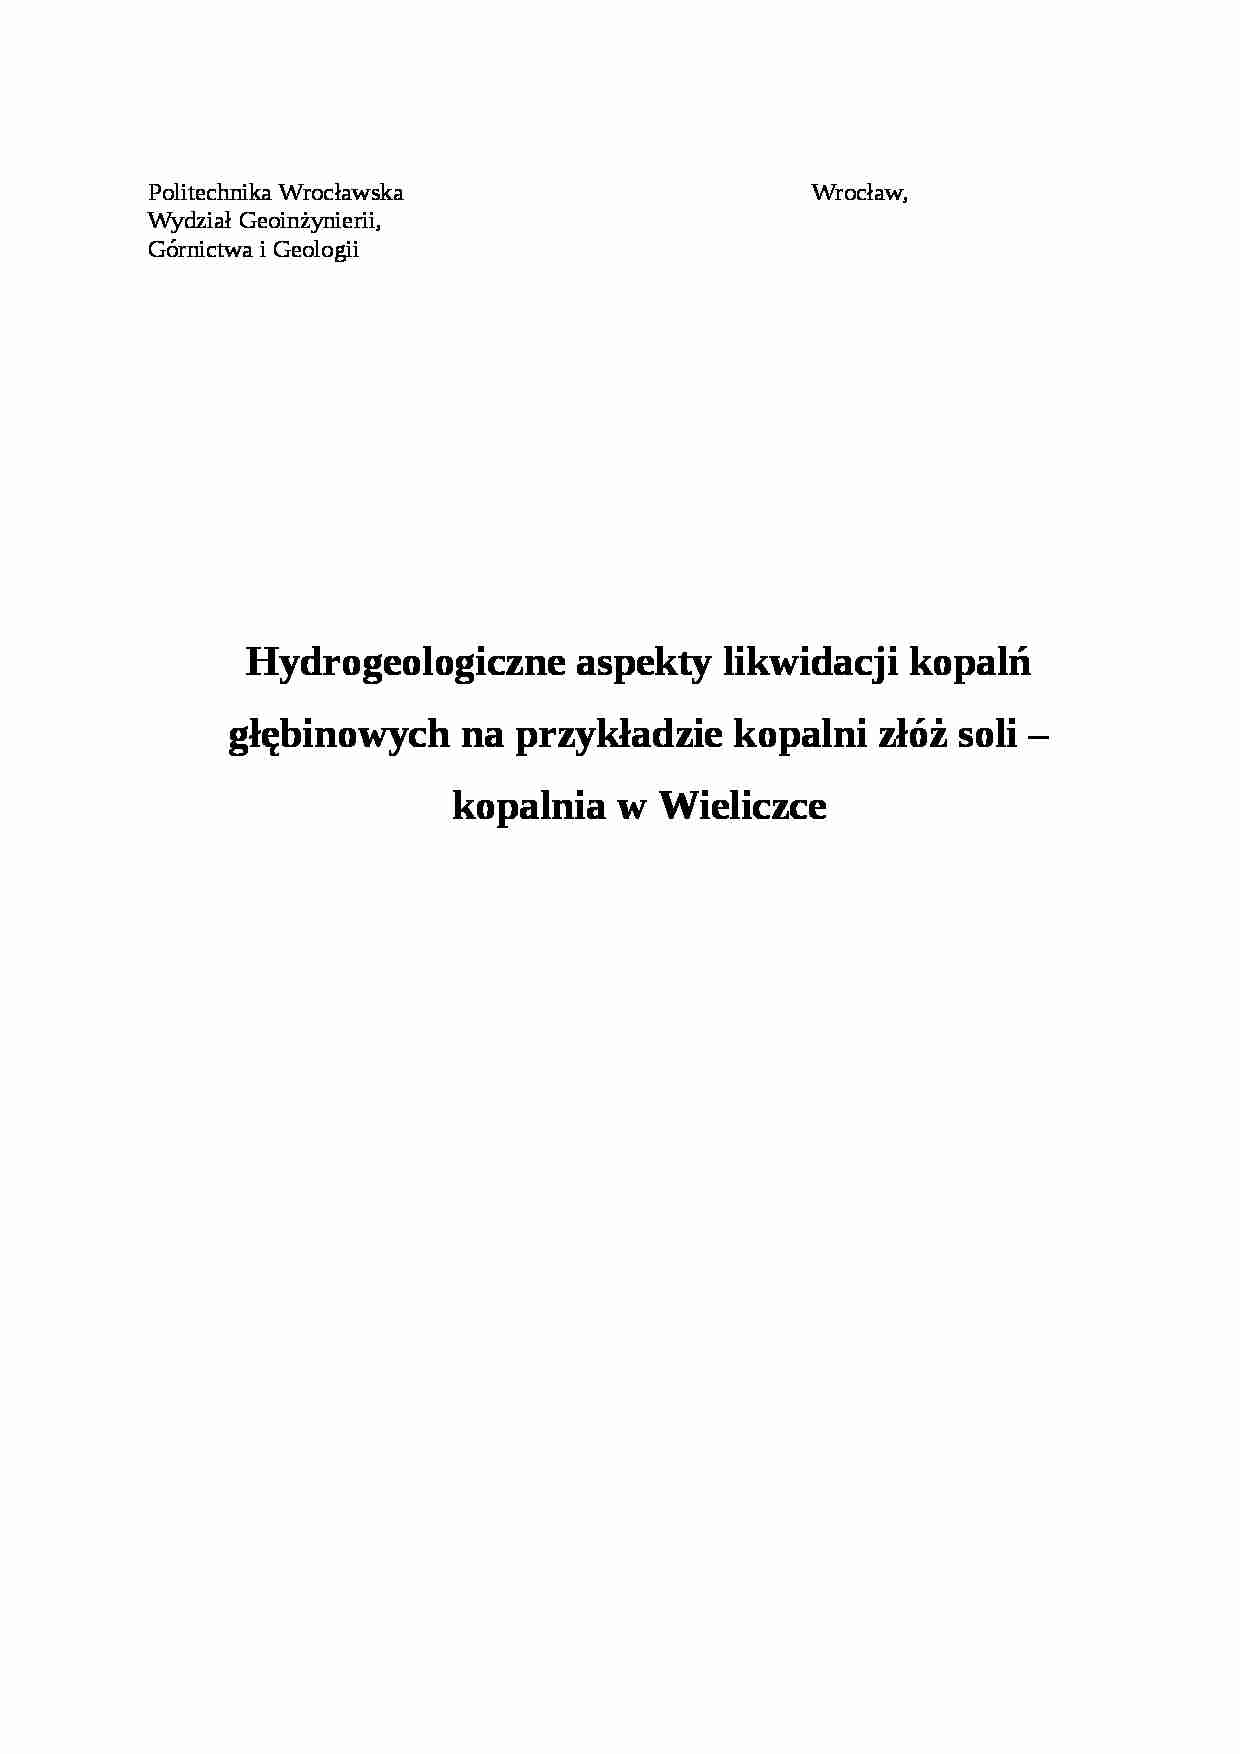 Hydrogeologiczne aspekty likwidacji kopalń - sprawozdanie - strona 1